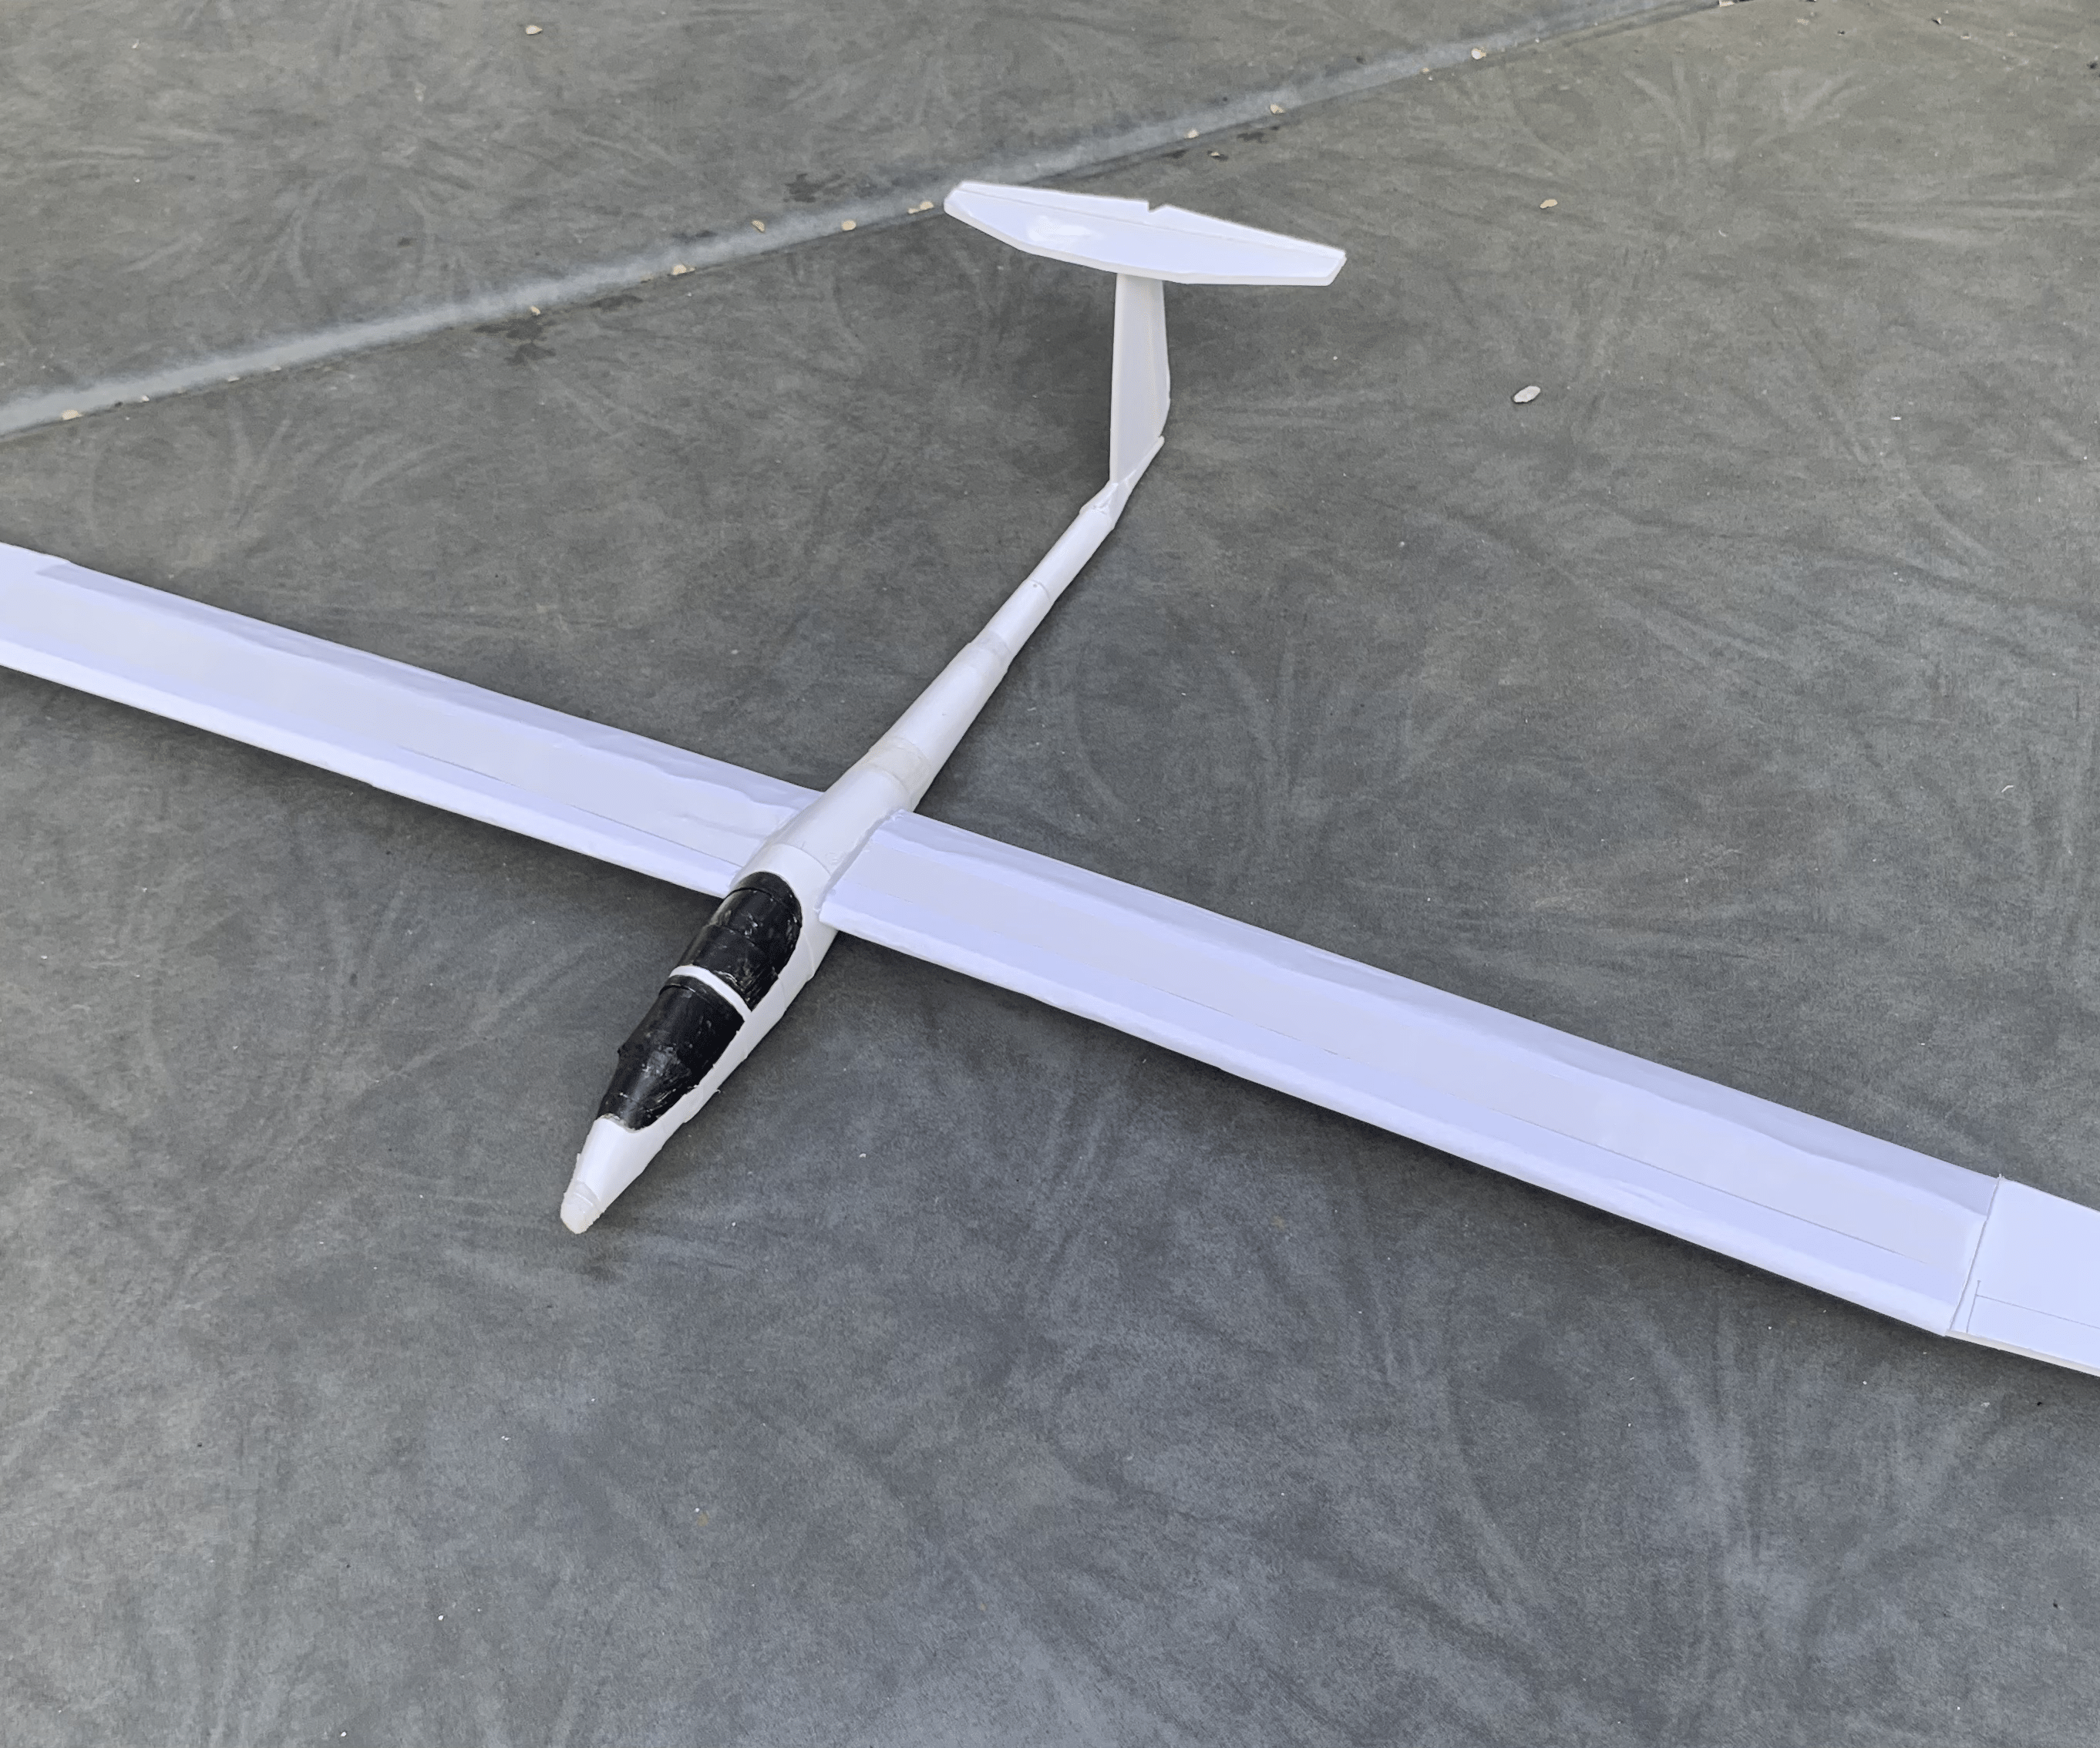 1:12 Scale Schempp-Hirth Discus Sailplane Glider